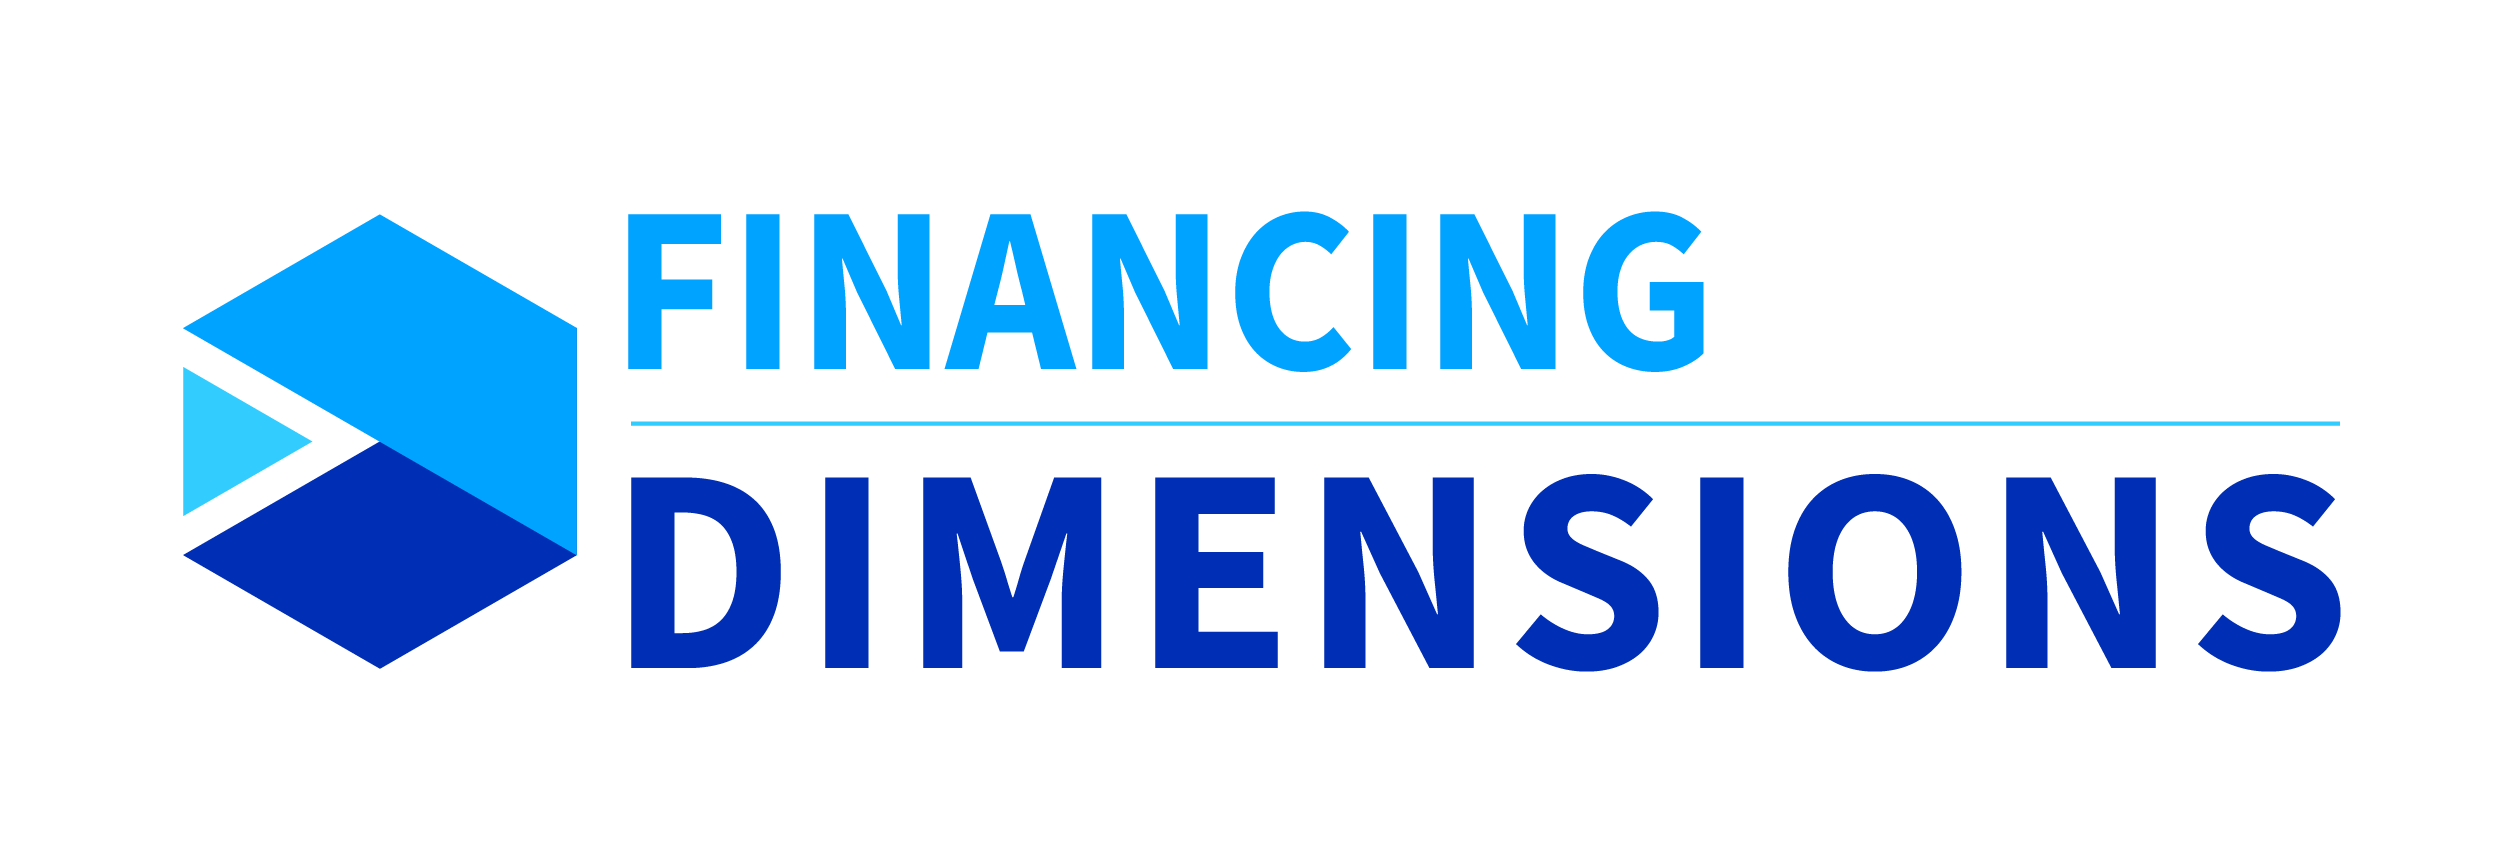 Dimensiones de la financiación - Acceltech Pte Ltd